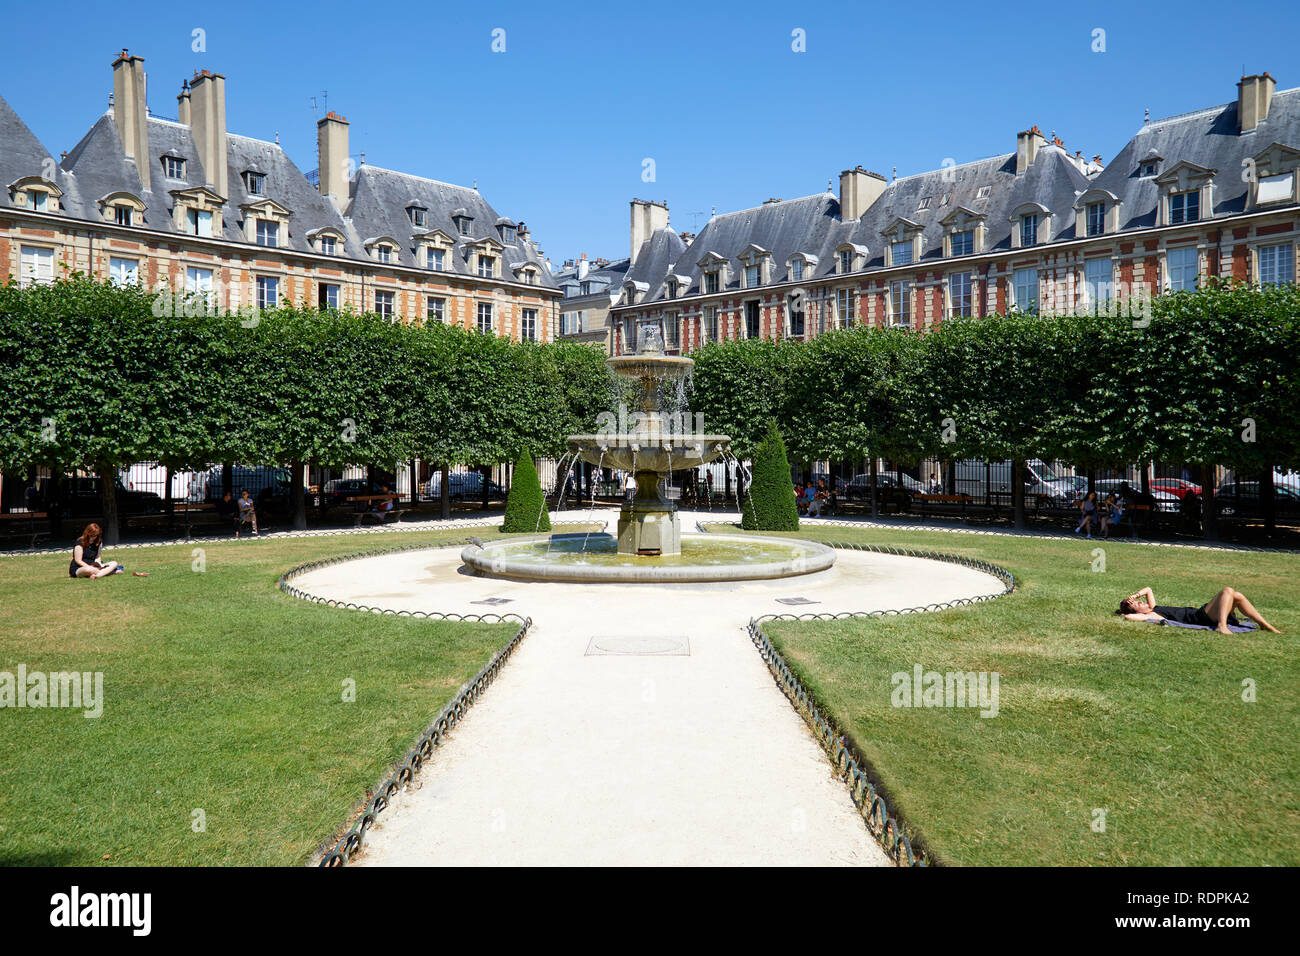 PARIS, FRANCE - Le 6 juillet 2018 : Place des Vosges avec des gens en train de bronzer sur l'herbe dans un beau jour d'été, ciel bleu clair à Paris Banque D'Images